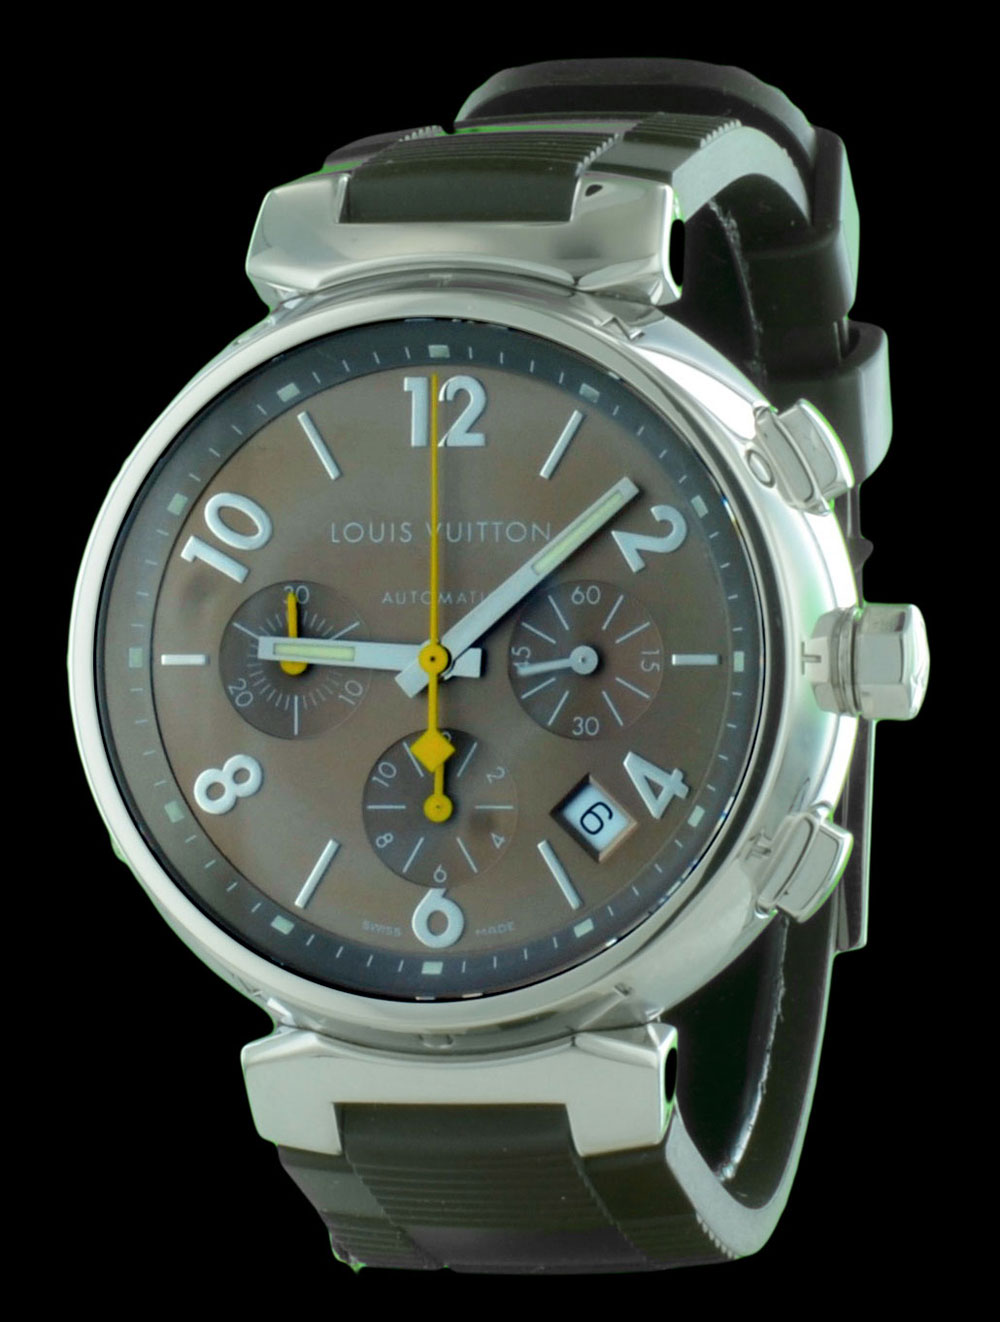 https://www.cresus.fr/montres/montre occasion de luxe chrono tambour louis vuitton,r2,p18093.html